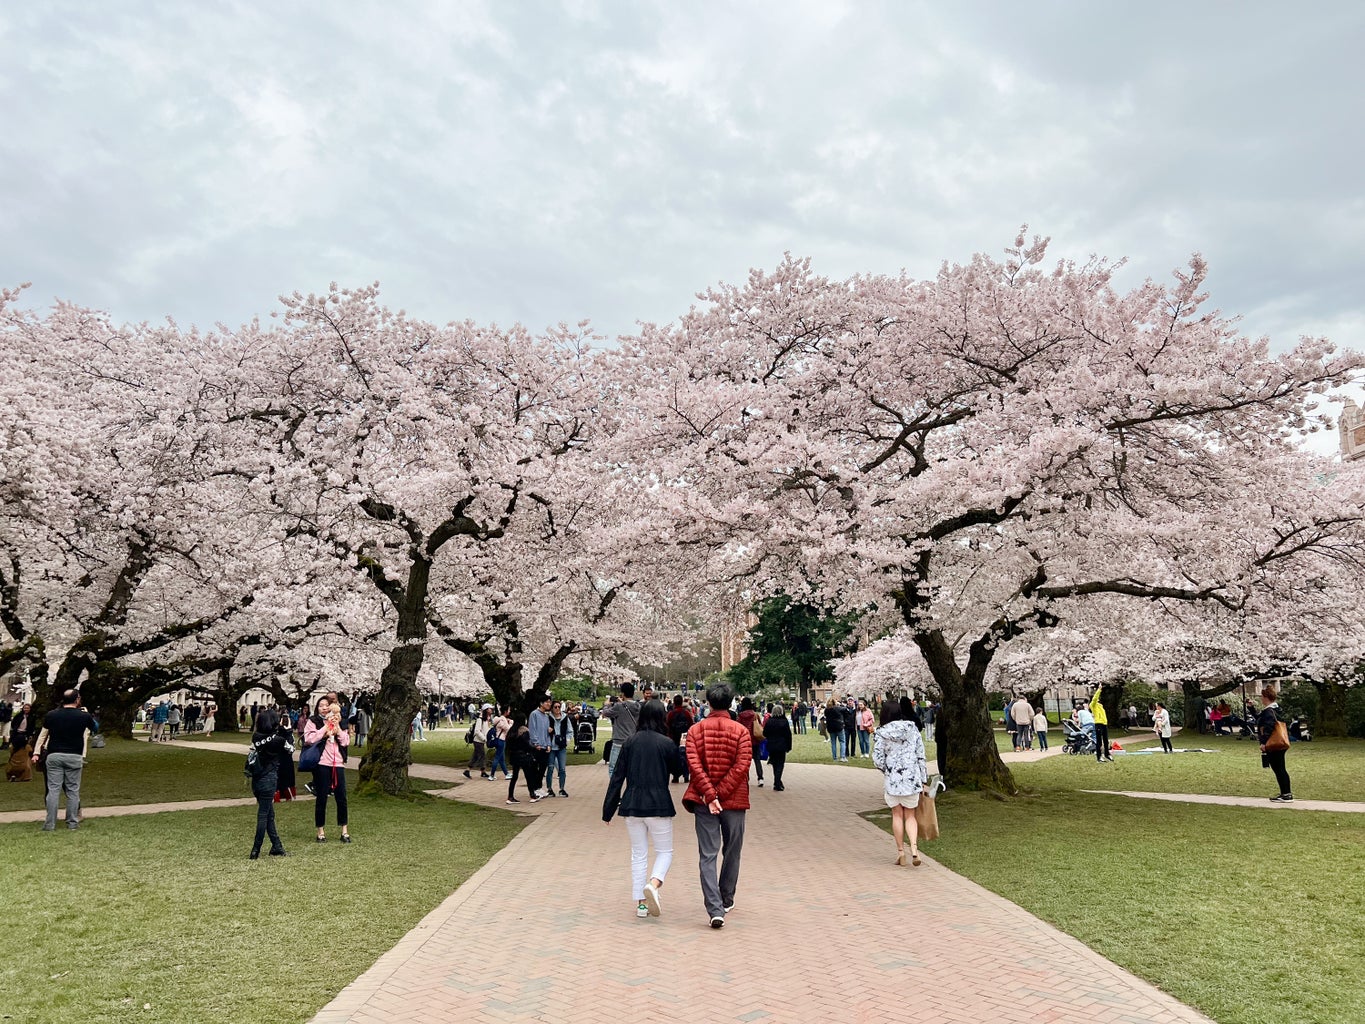 Cherry blossom trees at the University of Washington